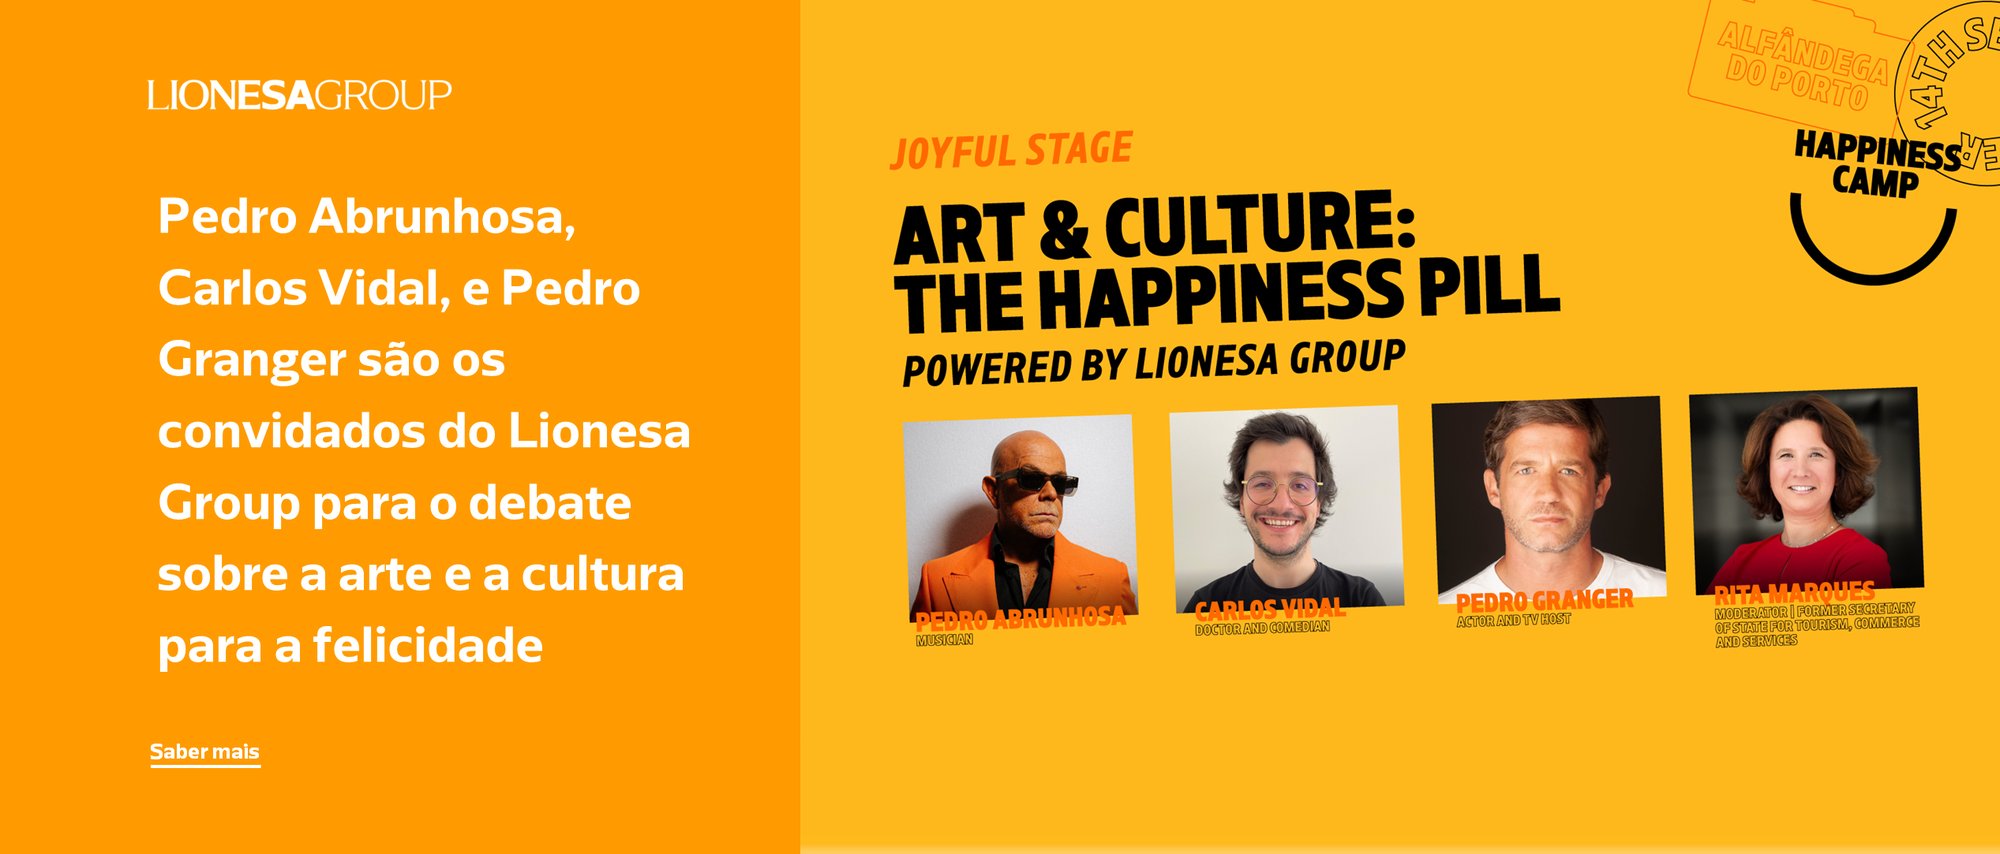 Pedro Abrunhosa, Carlos Vidal, e Pedro Granger são os convidados do Lionesa Group para o debate sobre a arte e a cultura para a felicidade